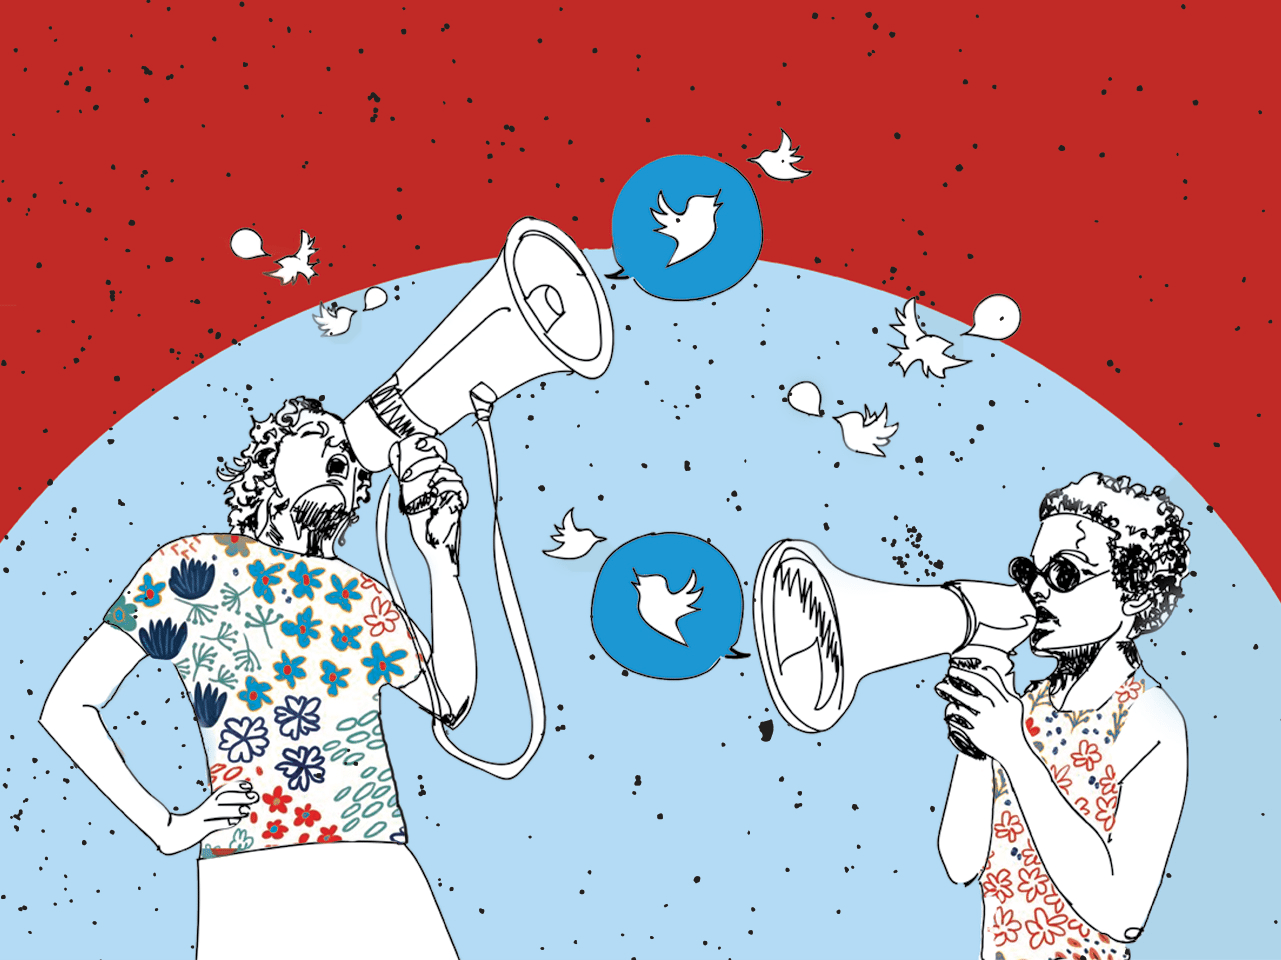 Nos EUA, um terço dos posts publicados no Twitter por adultos tem a ver com política